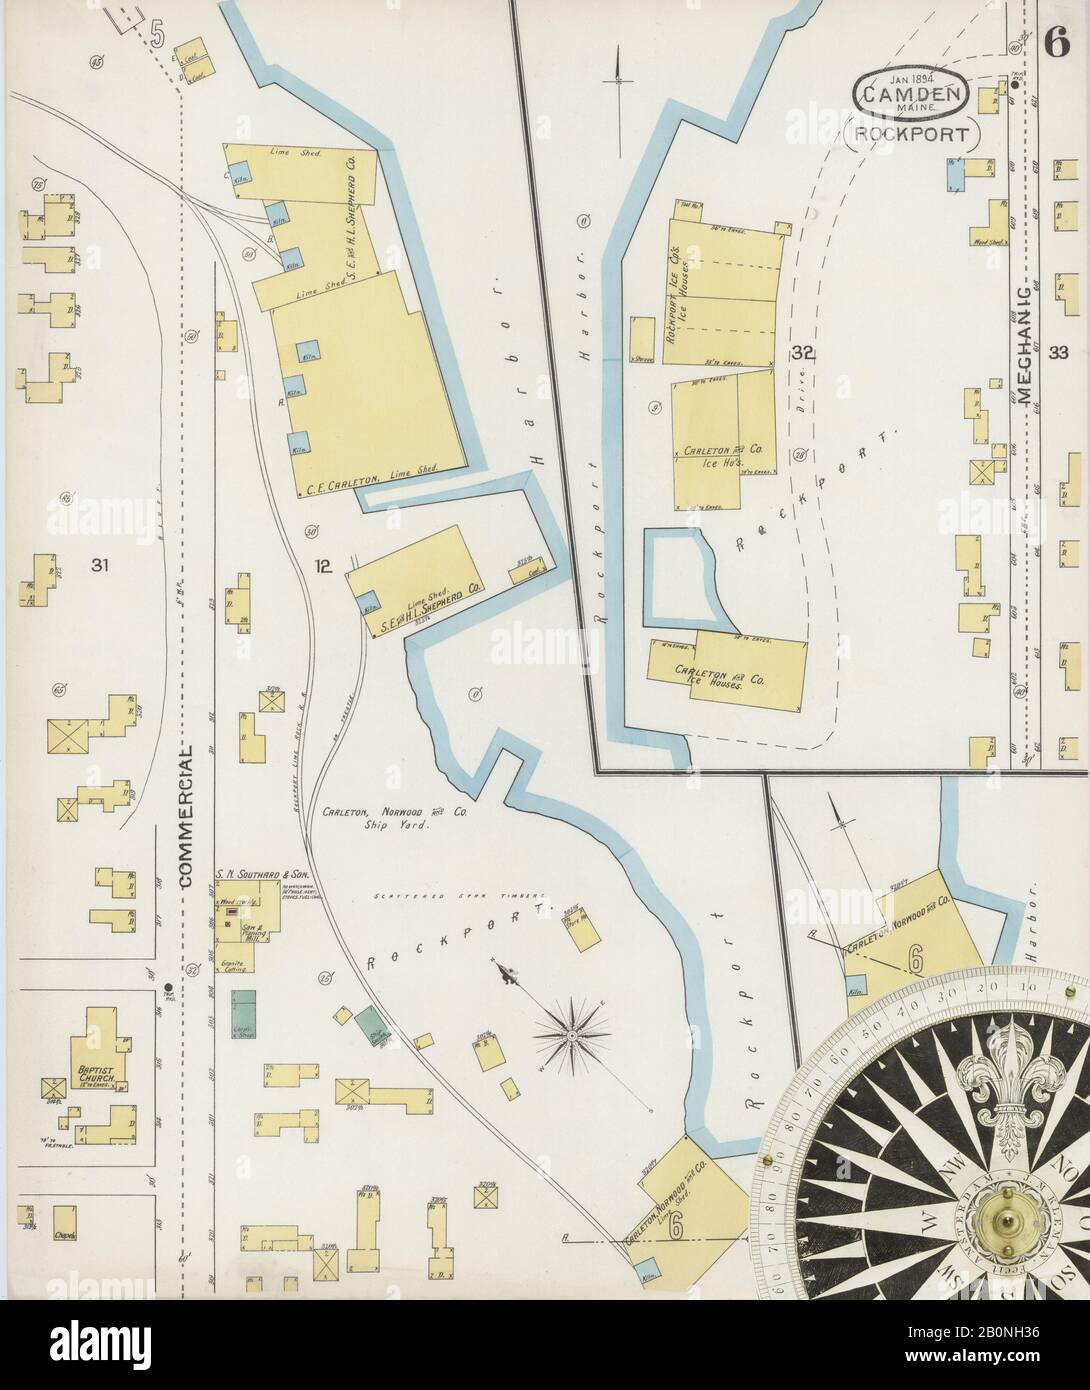 Bild 6 von Sanborn Fire Insurance Map aus Camden, Knox County, Maine. Jan 1894. 6 Blatt(e). Umfasst Rockport, Amerika, Straßenkarte mit einem Kompass Aus Dem 19. Jahrhundert Stockfoto